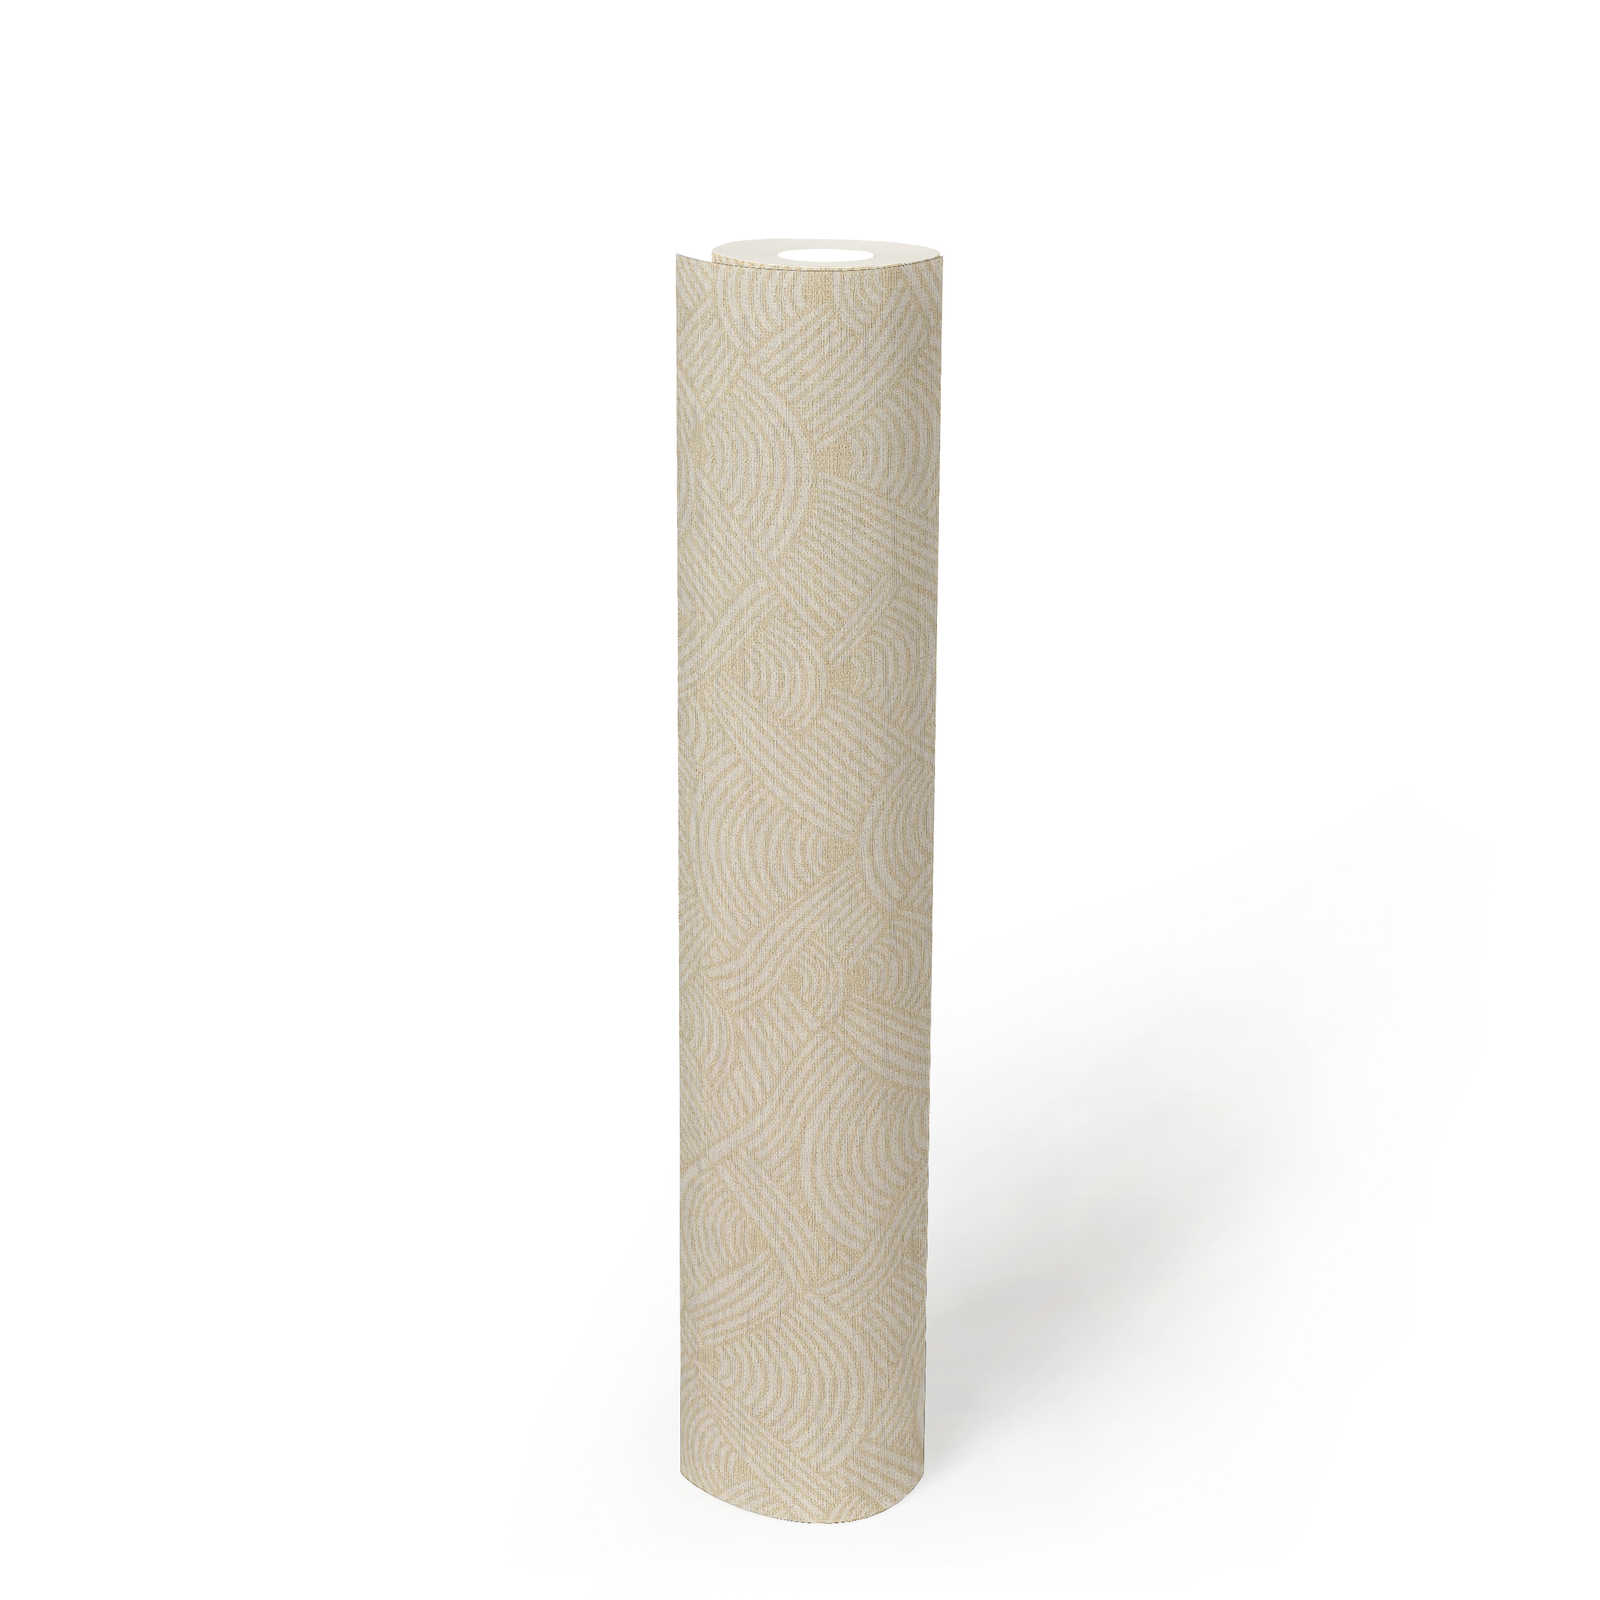             papel pintado no tejido con diseño de líquenes en estilo étnico - crema, blanco
        